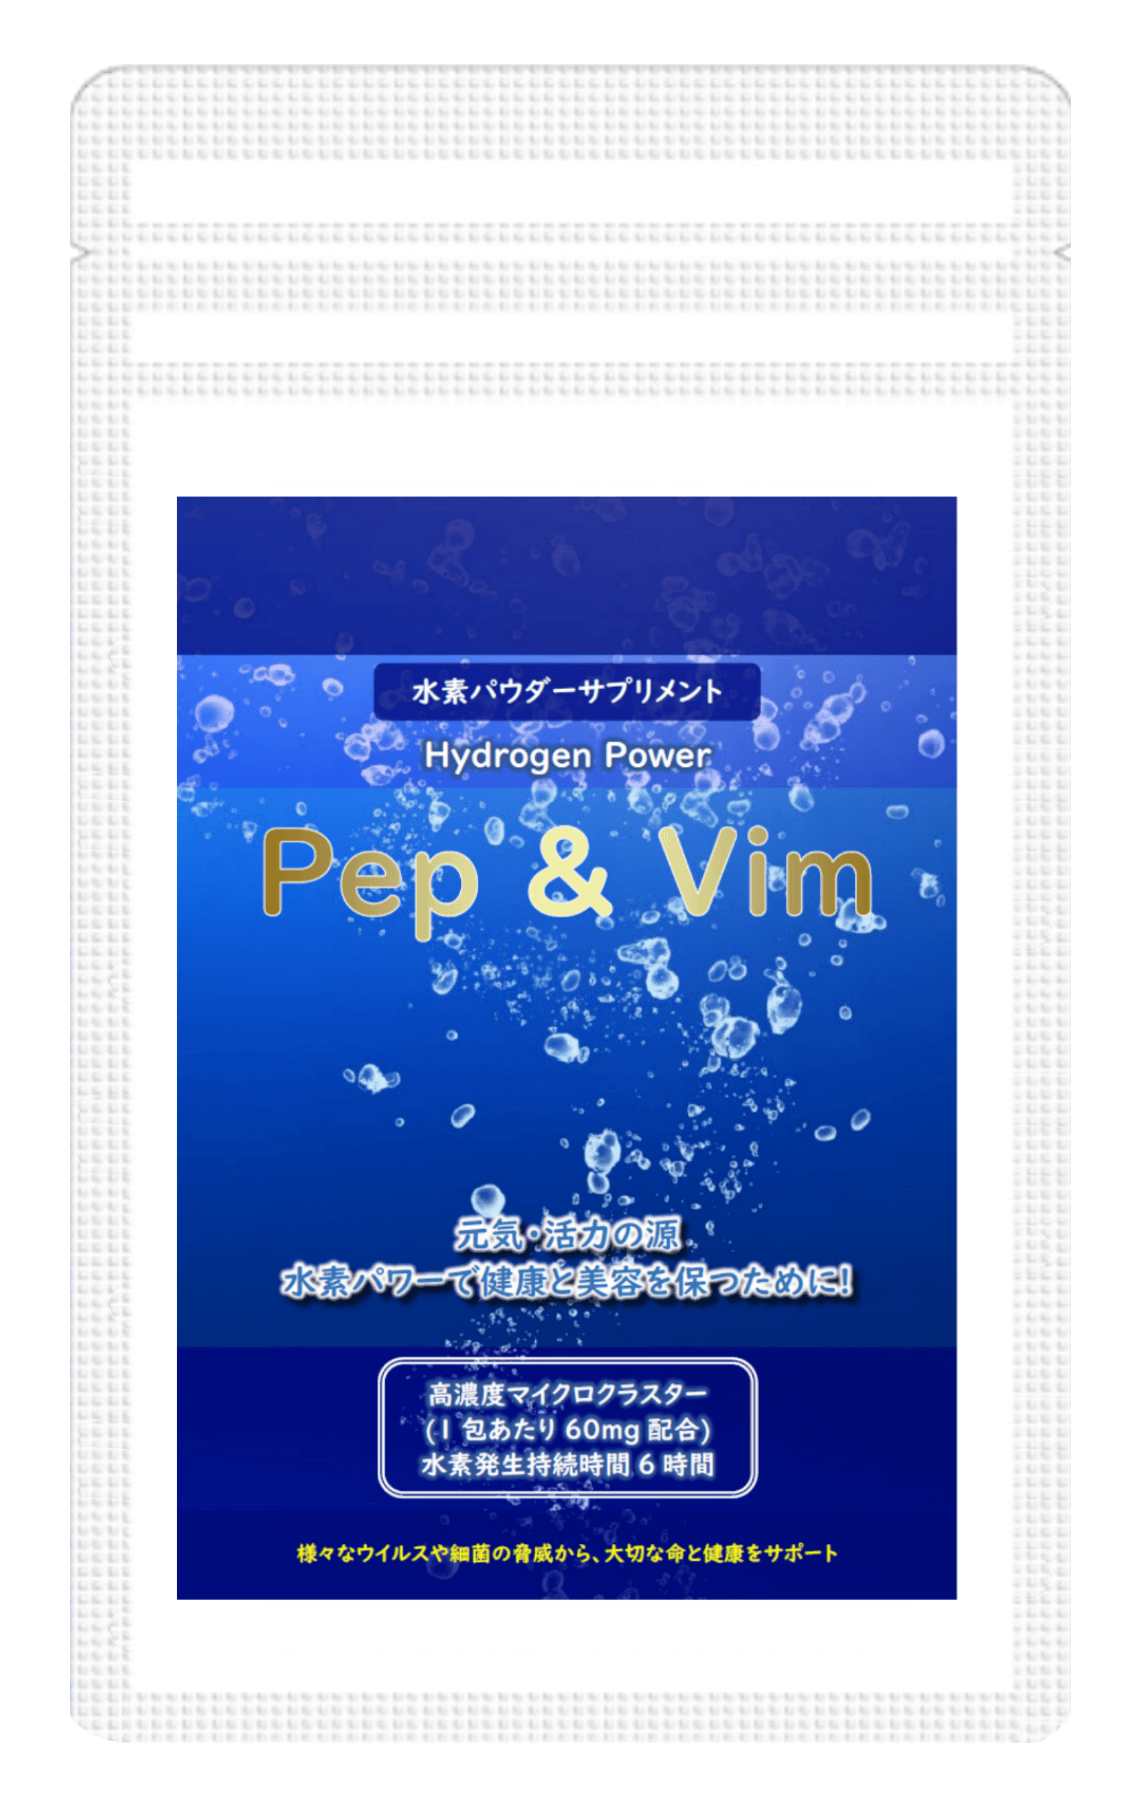 水素サプリメント「Pep&Vim」高濃度水素でいつまでも健康に